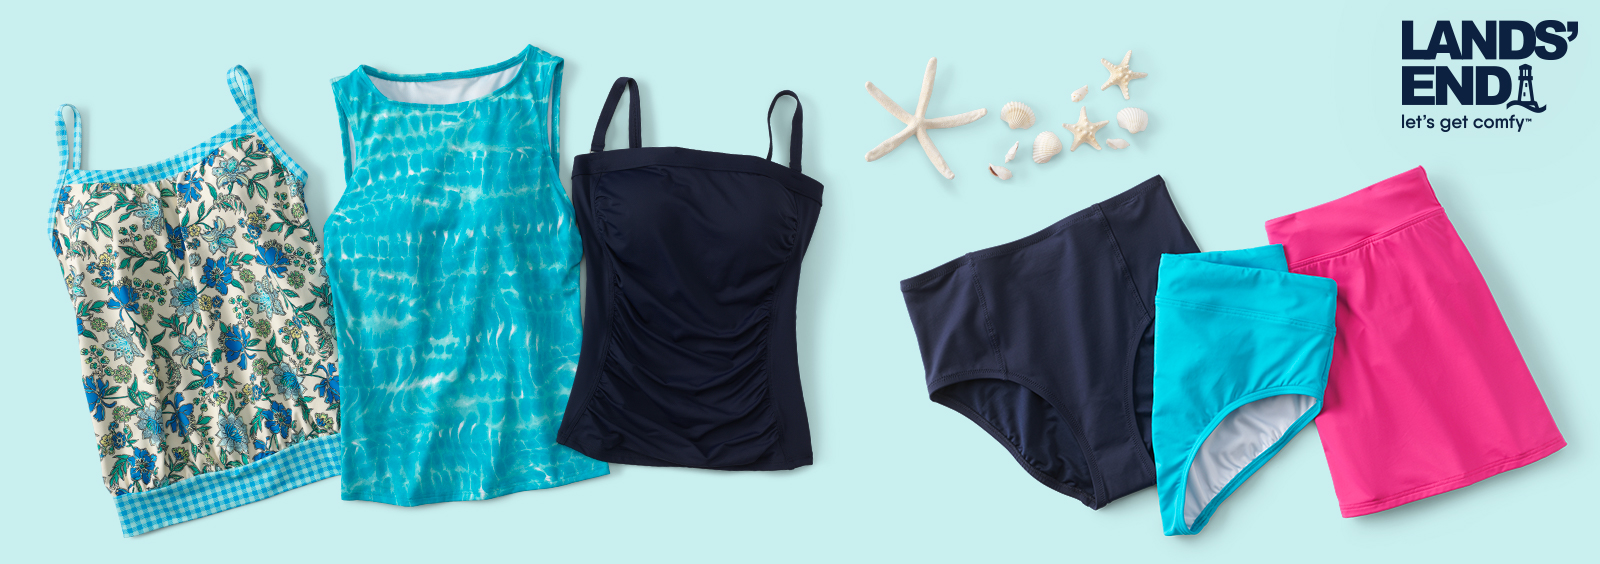 How Long Should a Swimsuit Last?